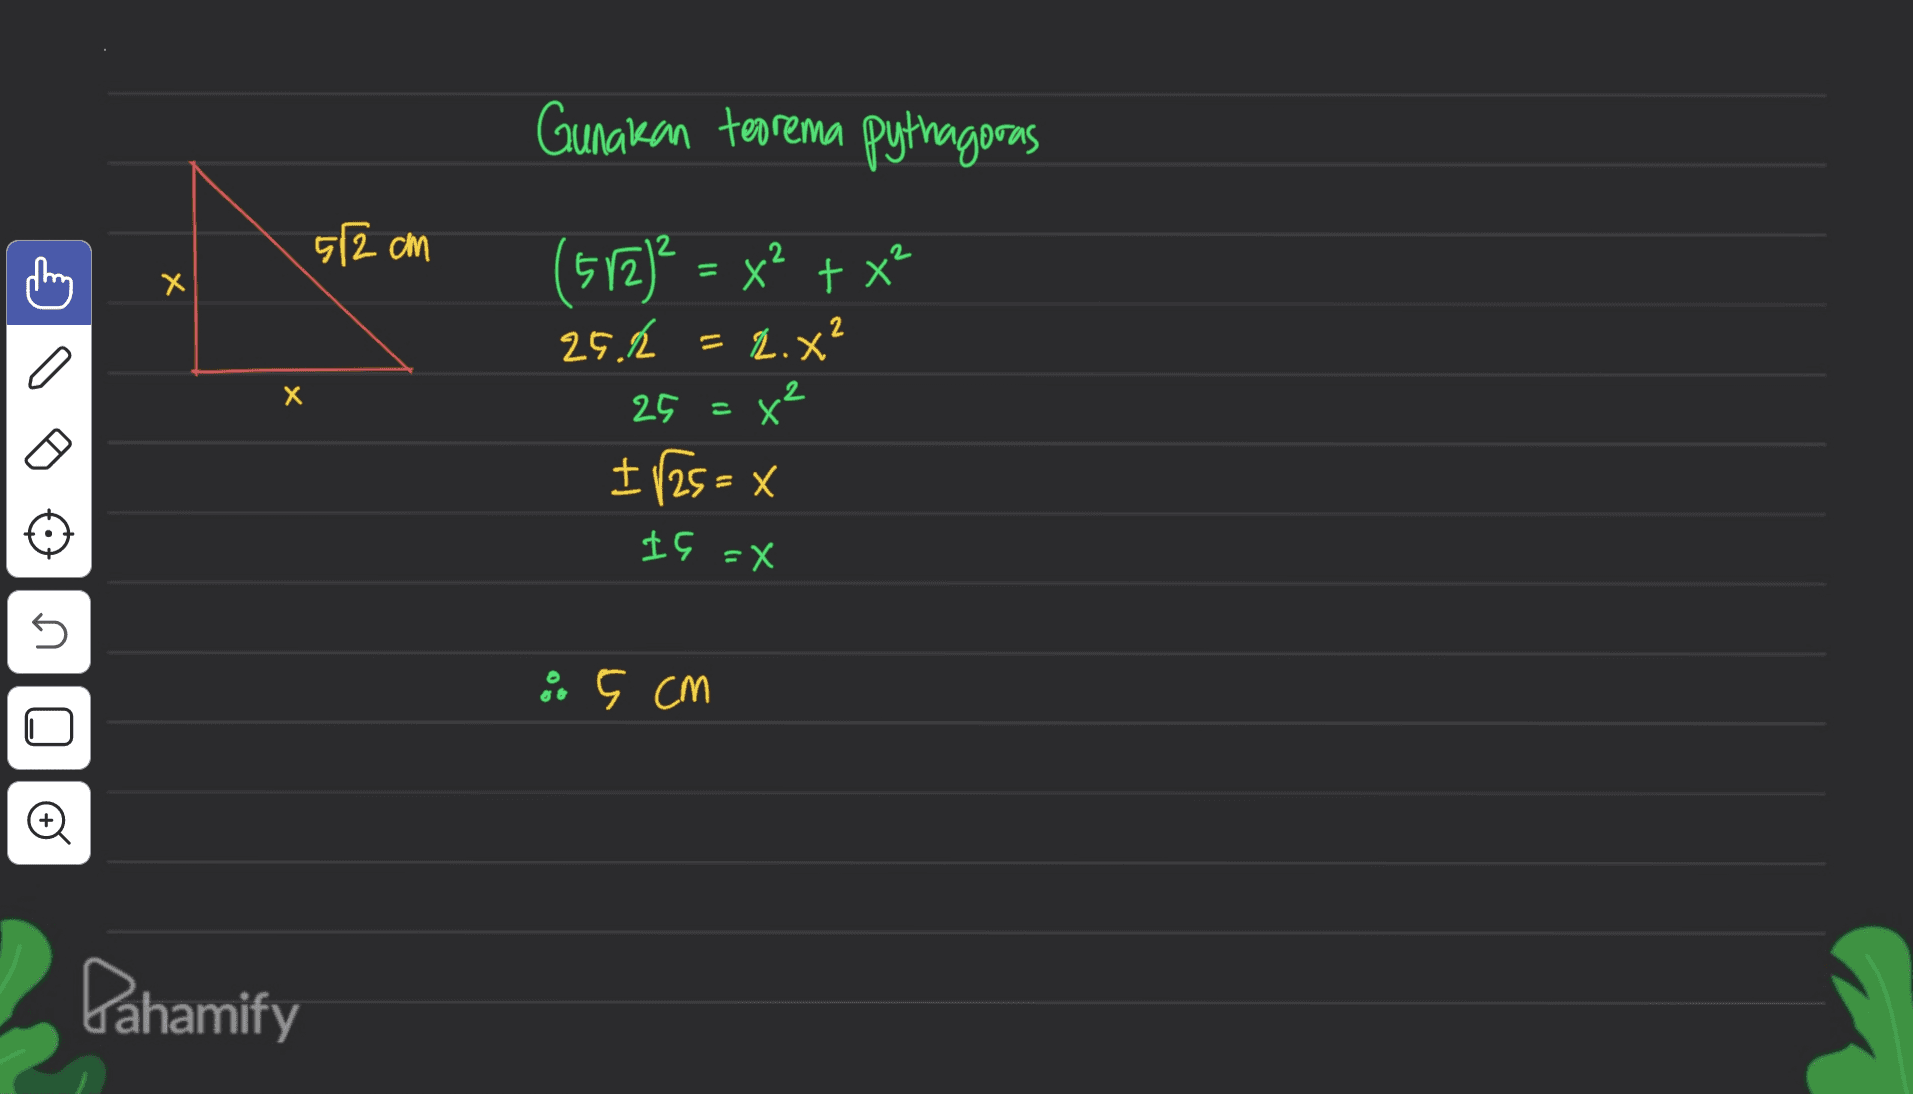 Gunakan teorema pythagoras 512 cm (512)² = x² + x² X Х 2 25.2 = 2.x? n X 2 25 = 8 co I 125 = x IG =X s a ç cm + Lahamify 